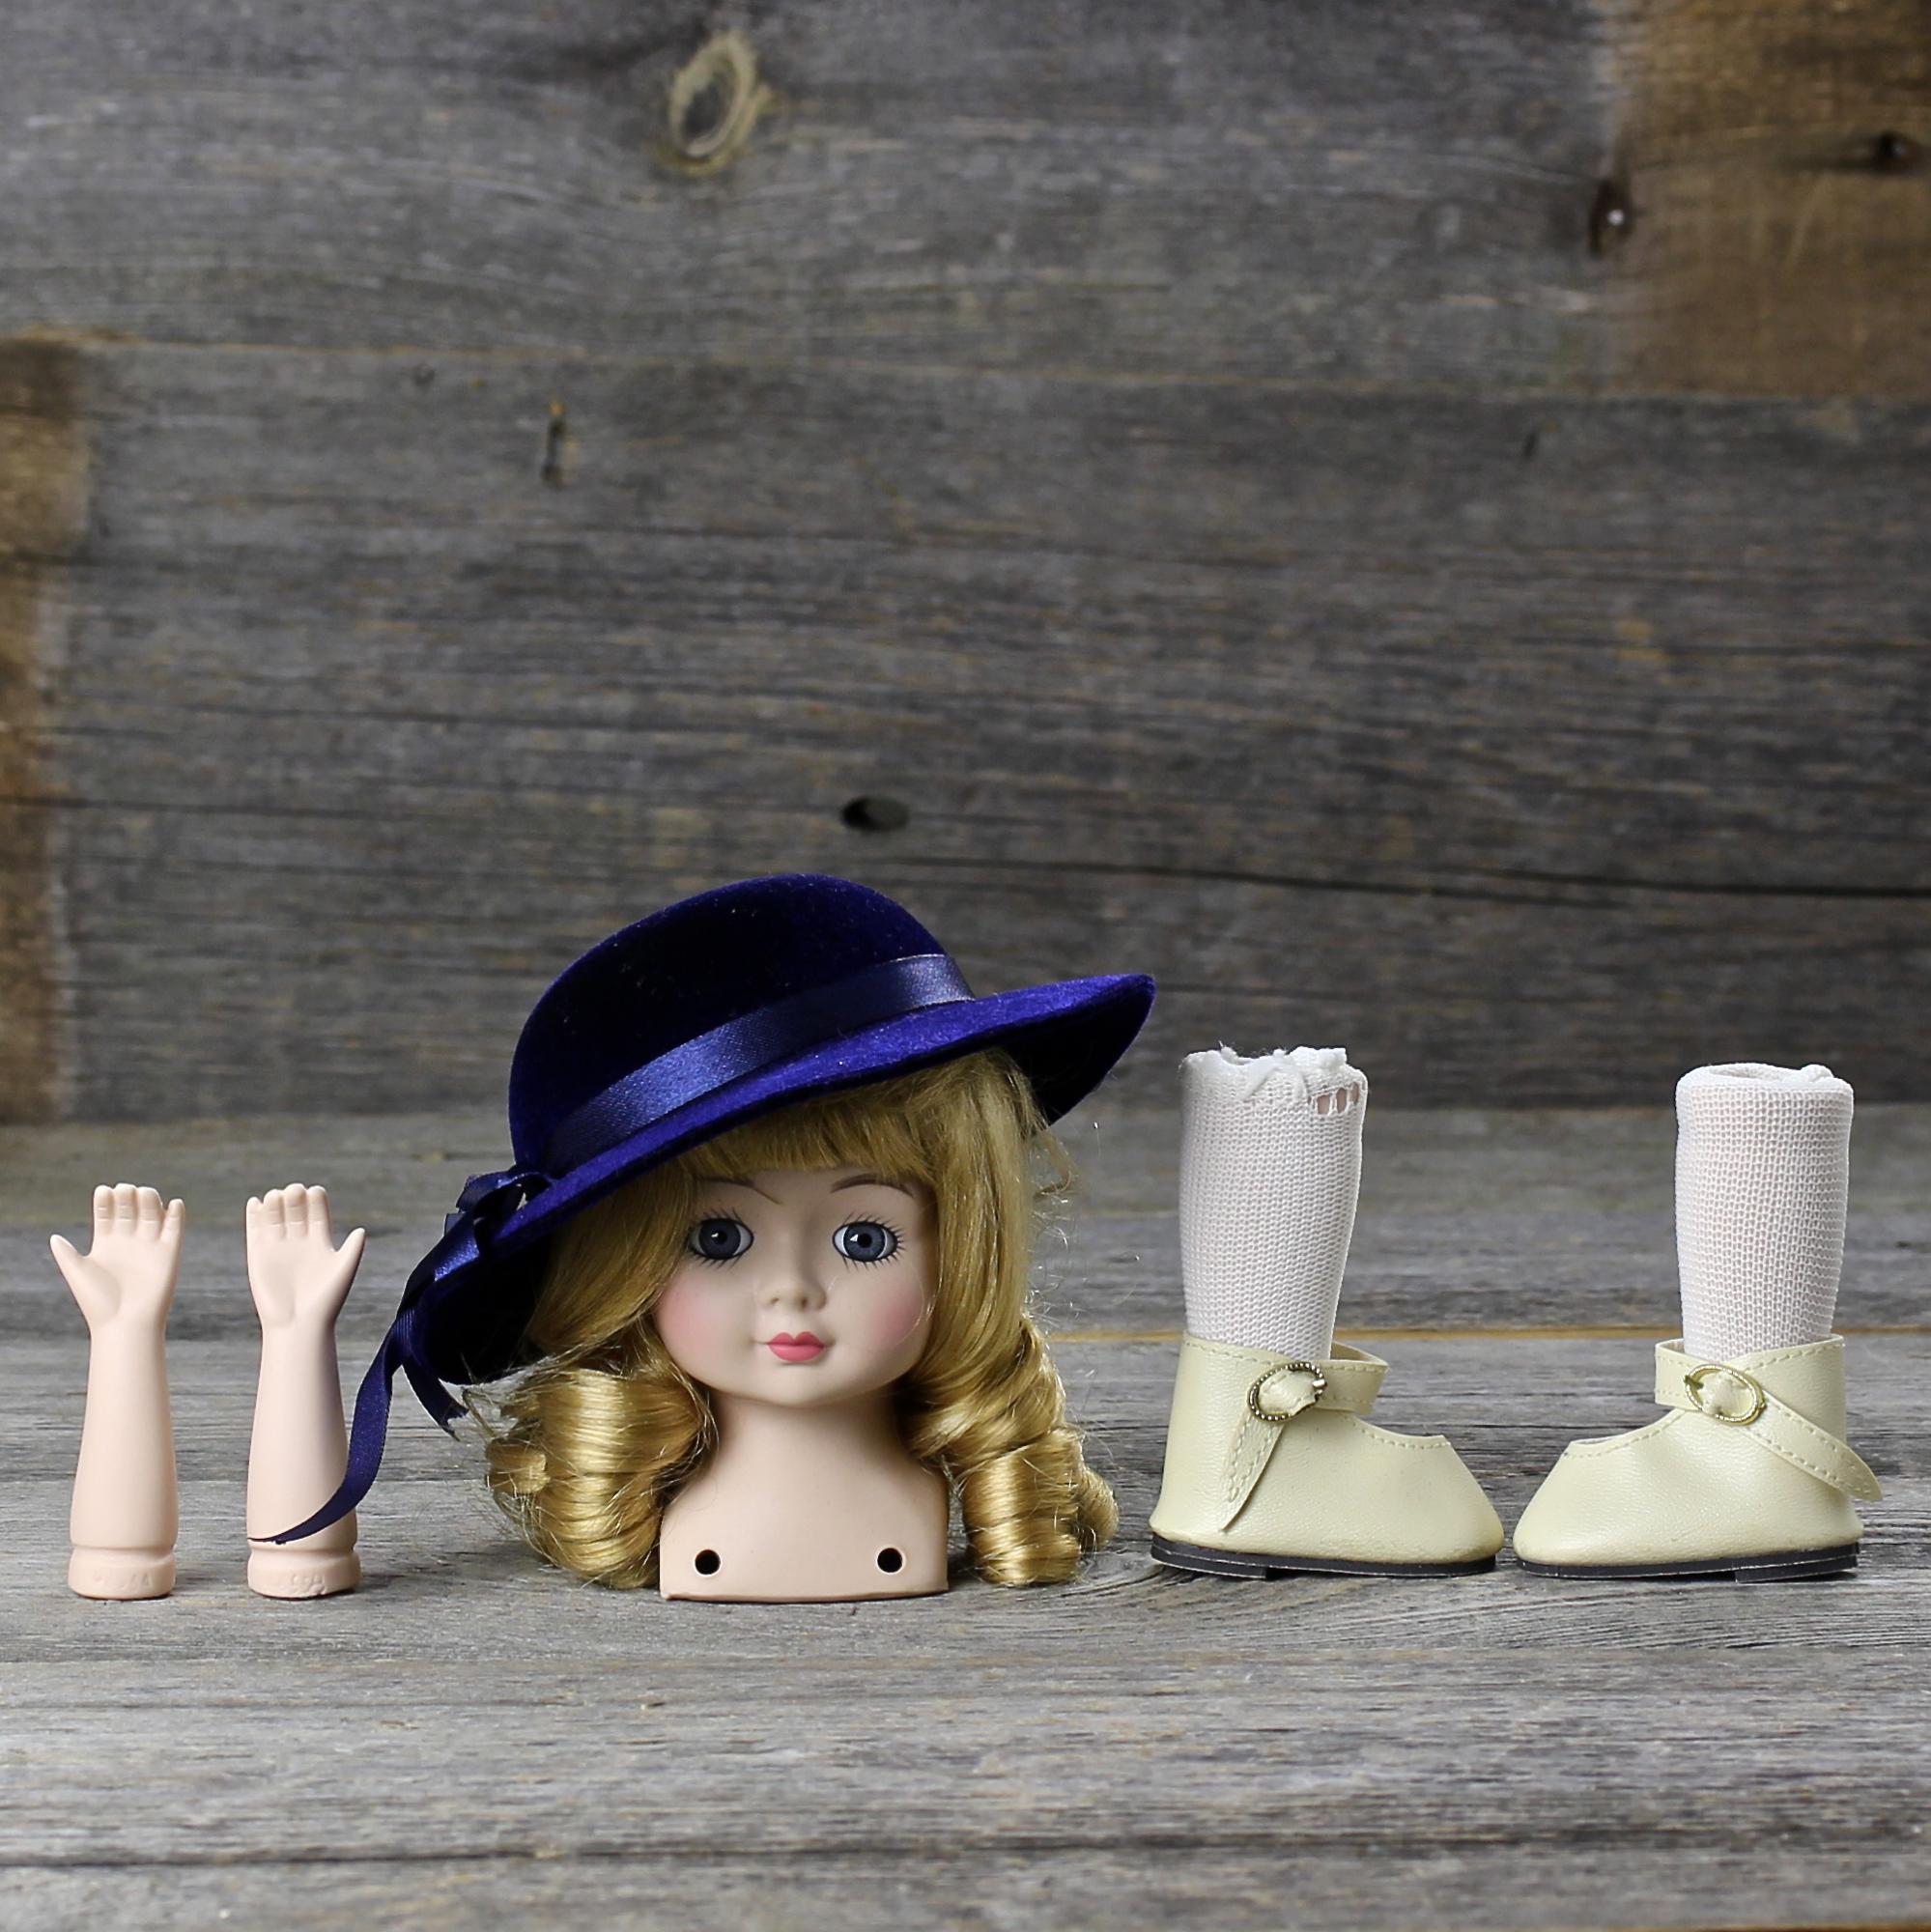 Винтажные детали для куклы Фарфоровый бюст, руки, ножки в светлых чулках и туфлях, шляпка